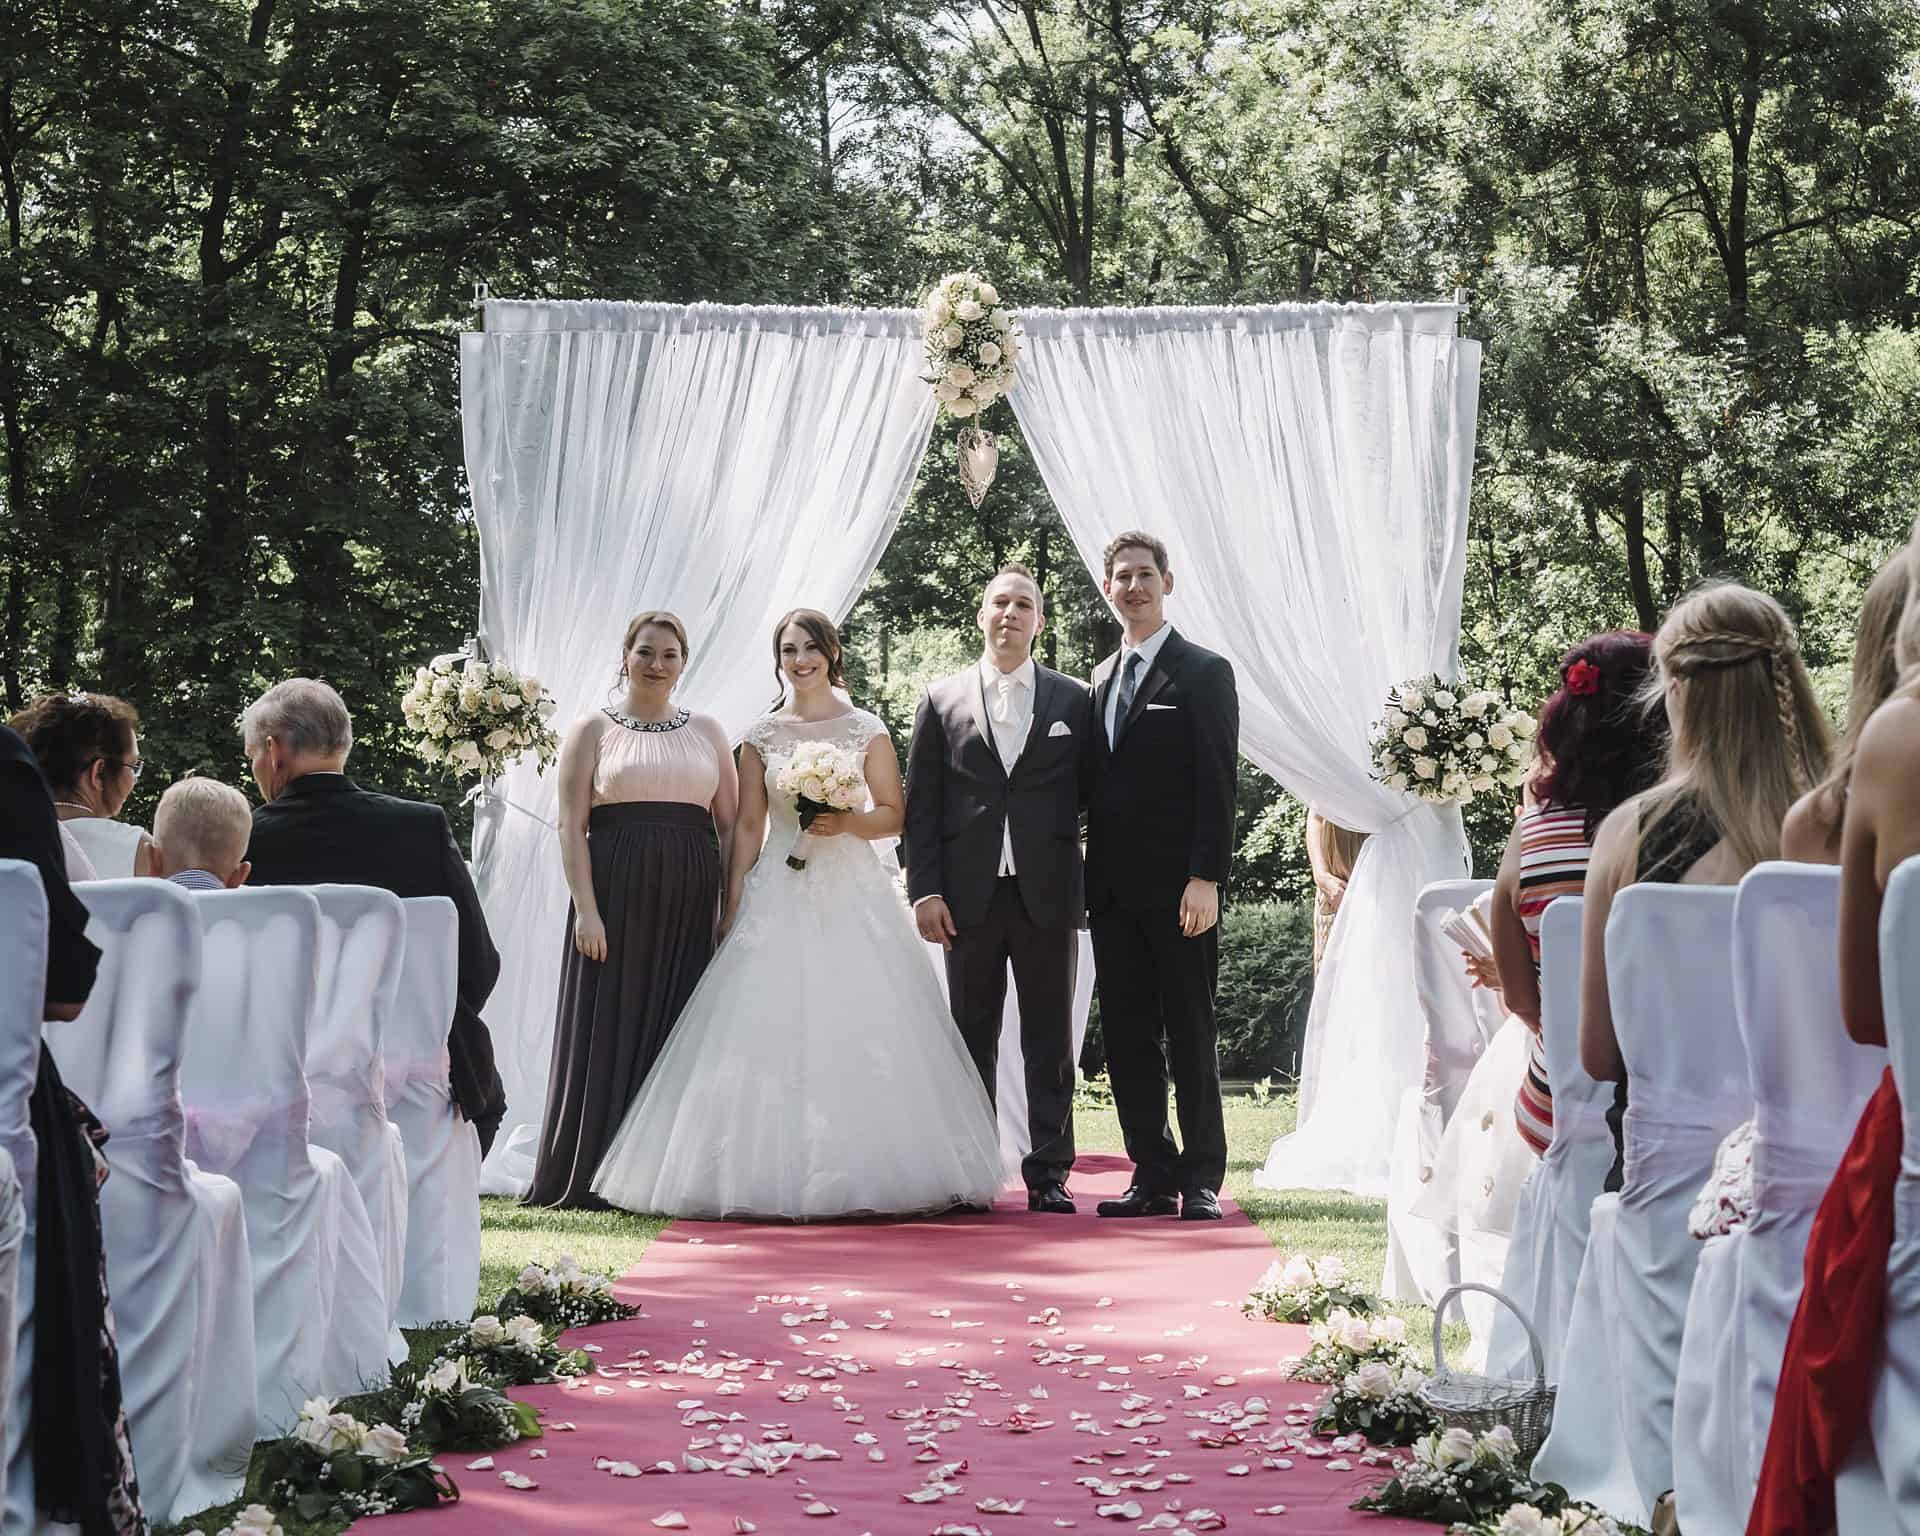 Eine Hochzeitszeremonie mit Braut und Bräutigam auf einem roten Teppich.